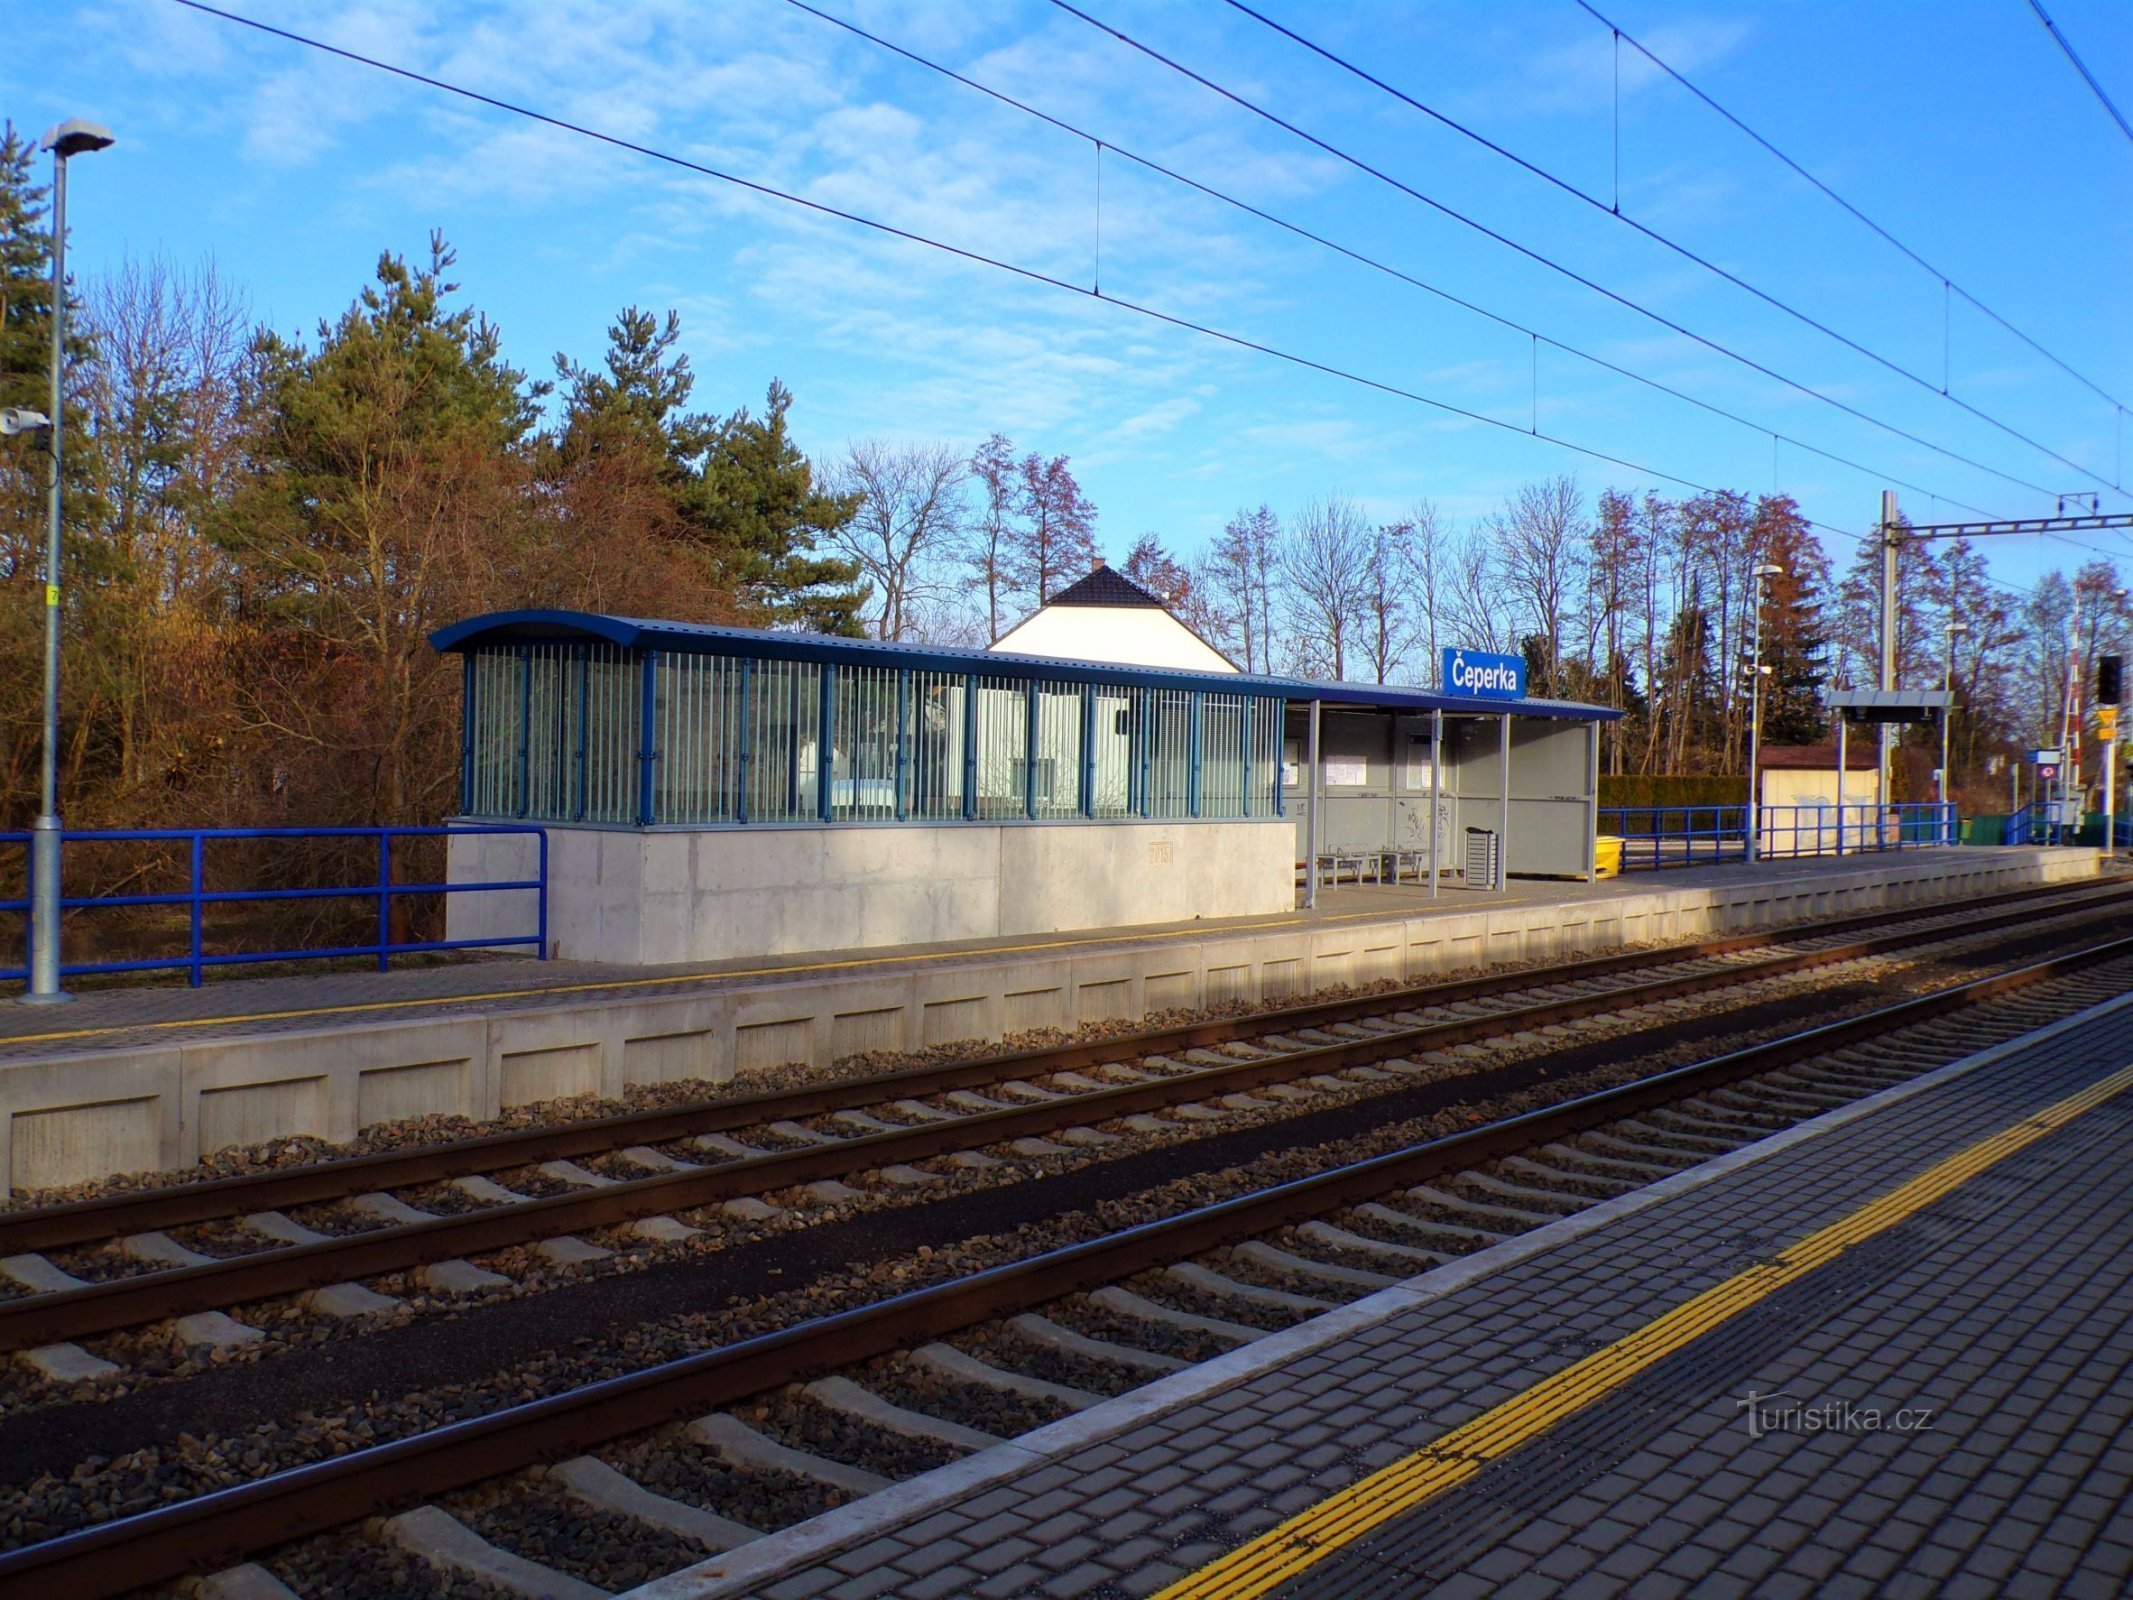 火车站 (Čeperka, 18.2.2022/XNUMX/XNUMX)